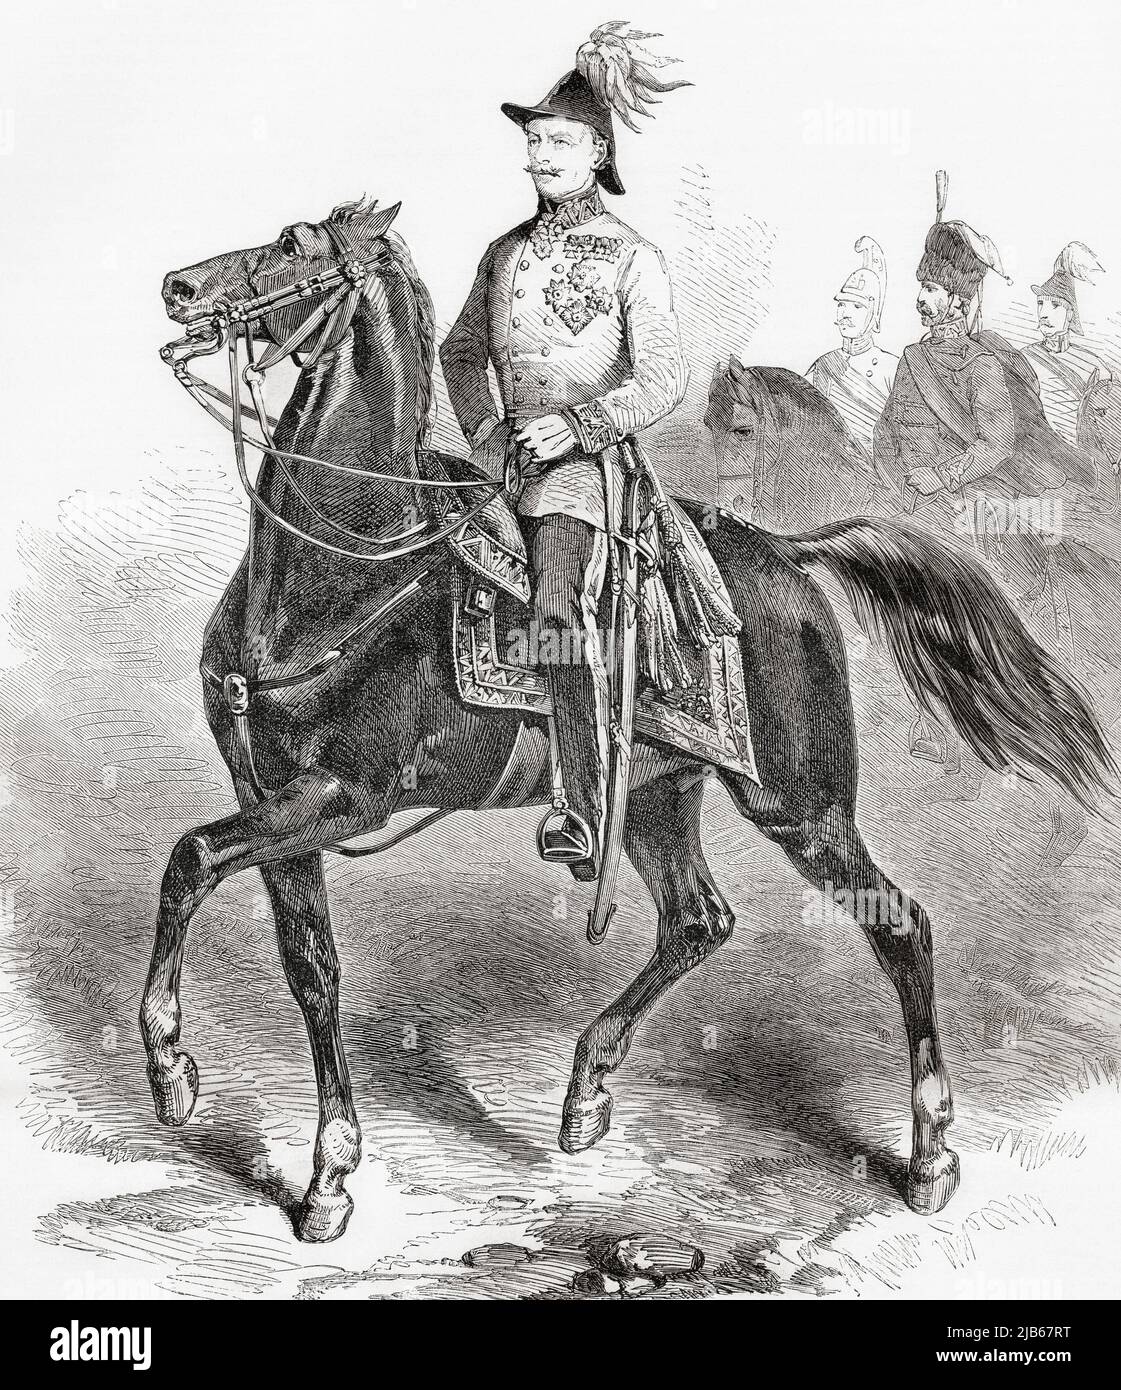 Heinrich Hermann Josef Freiherr von Hess or von Hess, 1788 - 1870. Austrian soldier and field marshal. From L'Univers Illustre, published Paris, 1859. Stock Photo